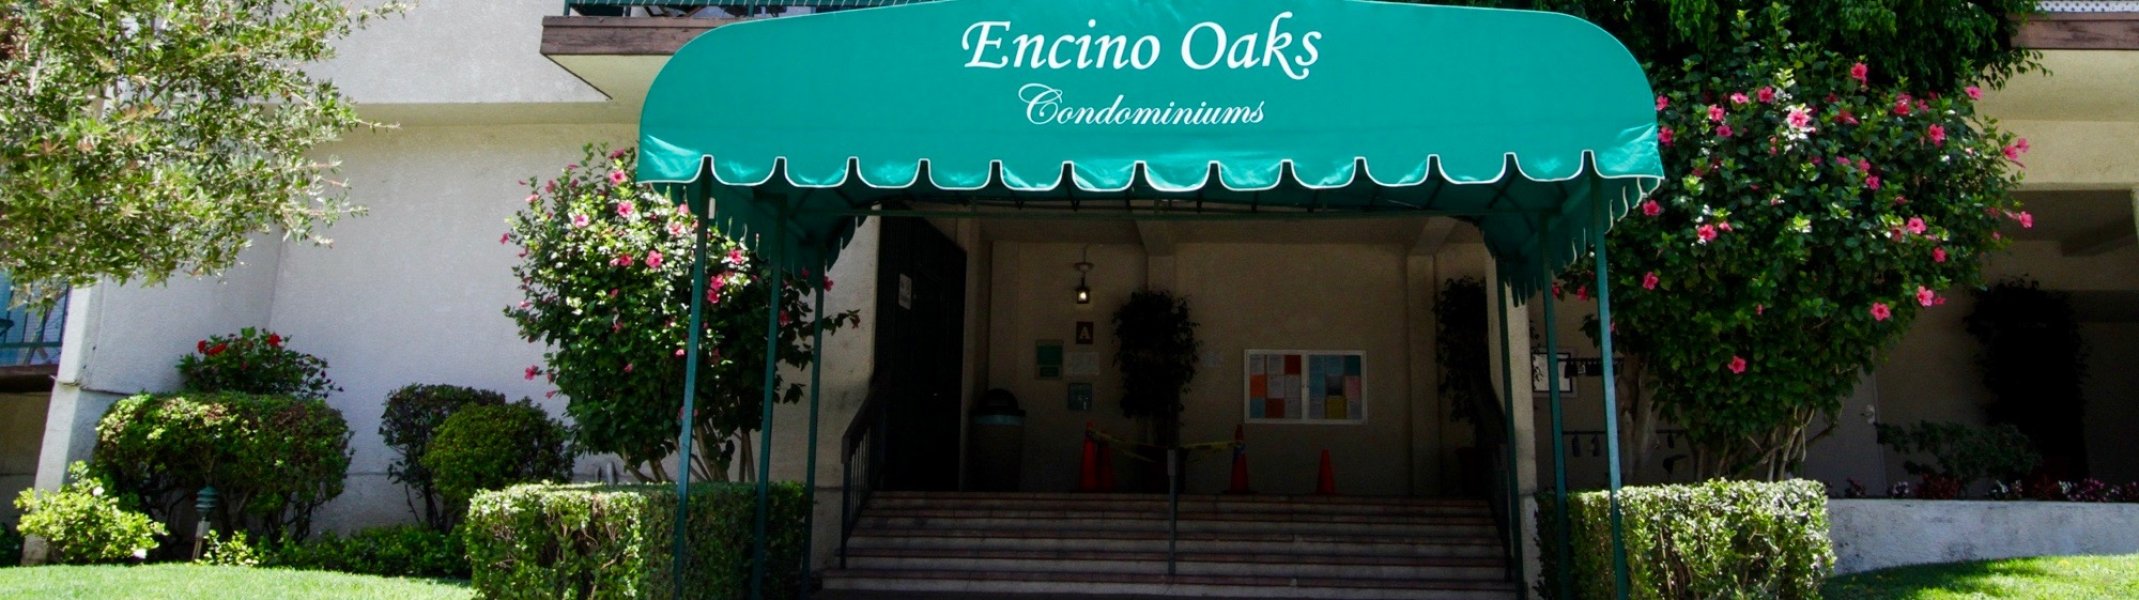 Encino Oaks